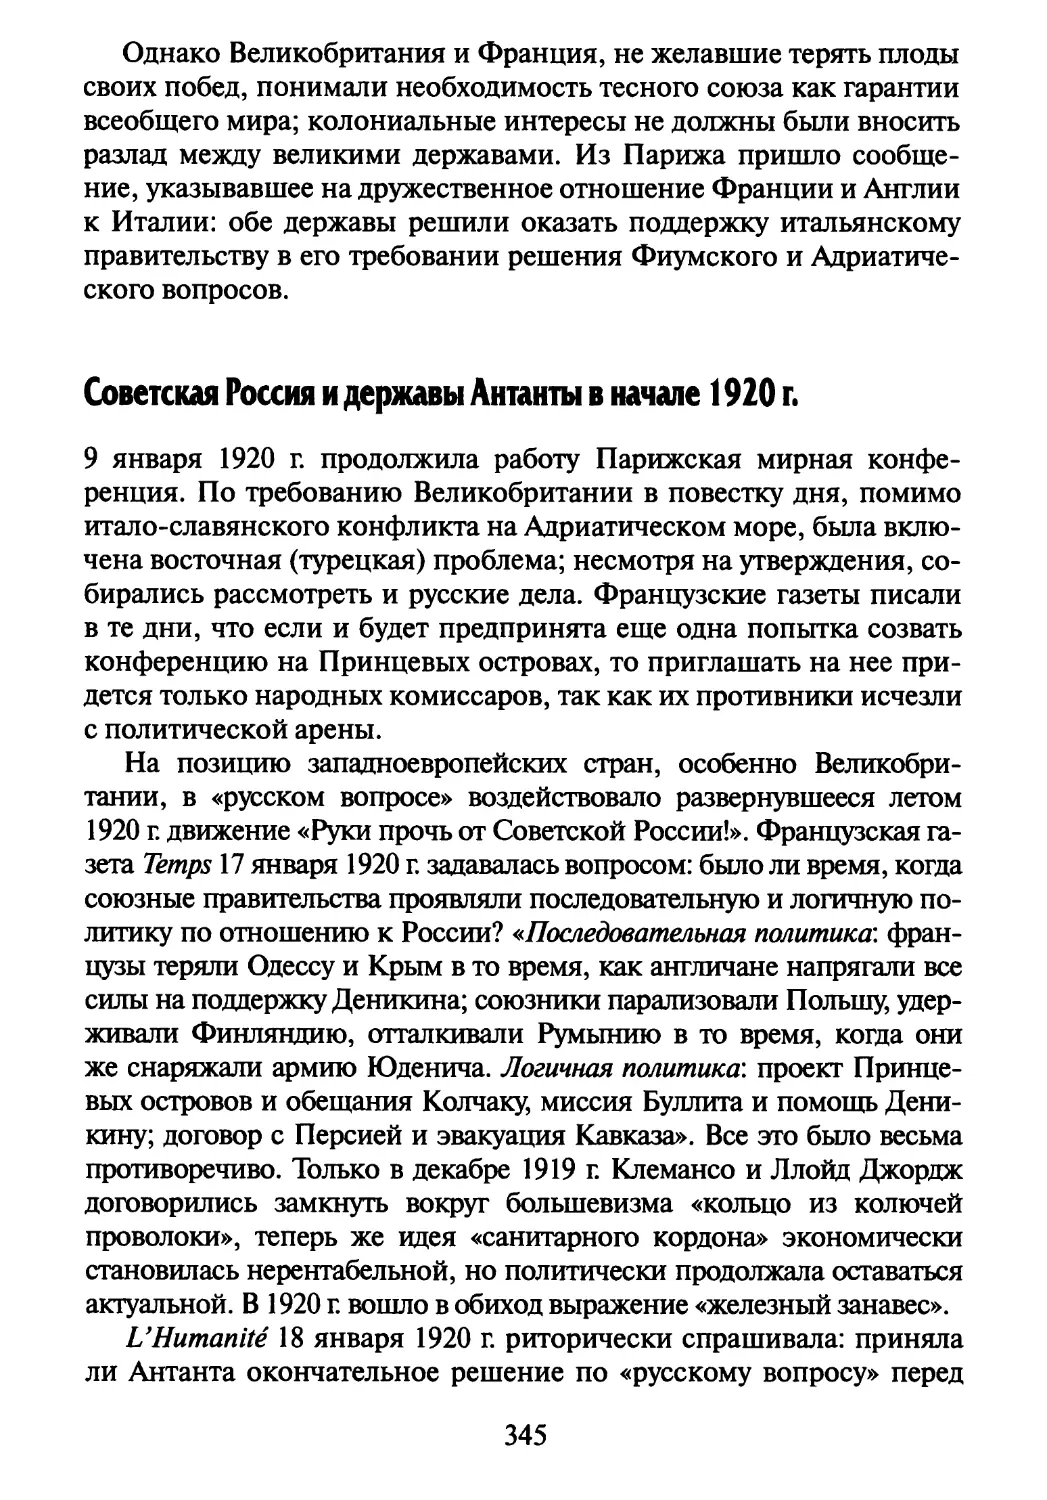 Советская Россия и державы Антанты в начале 1920 г